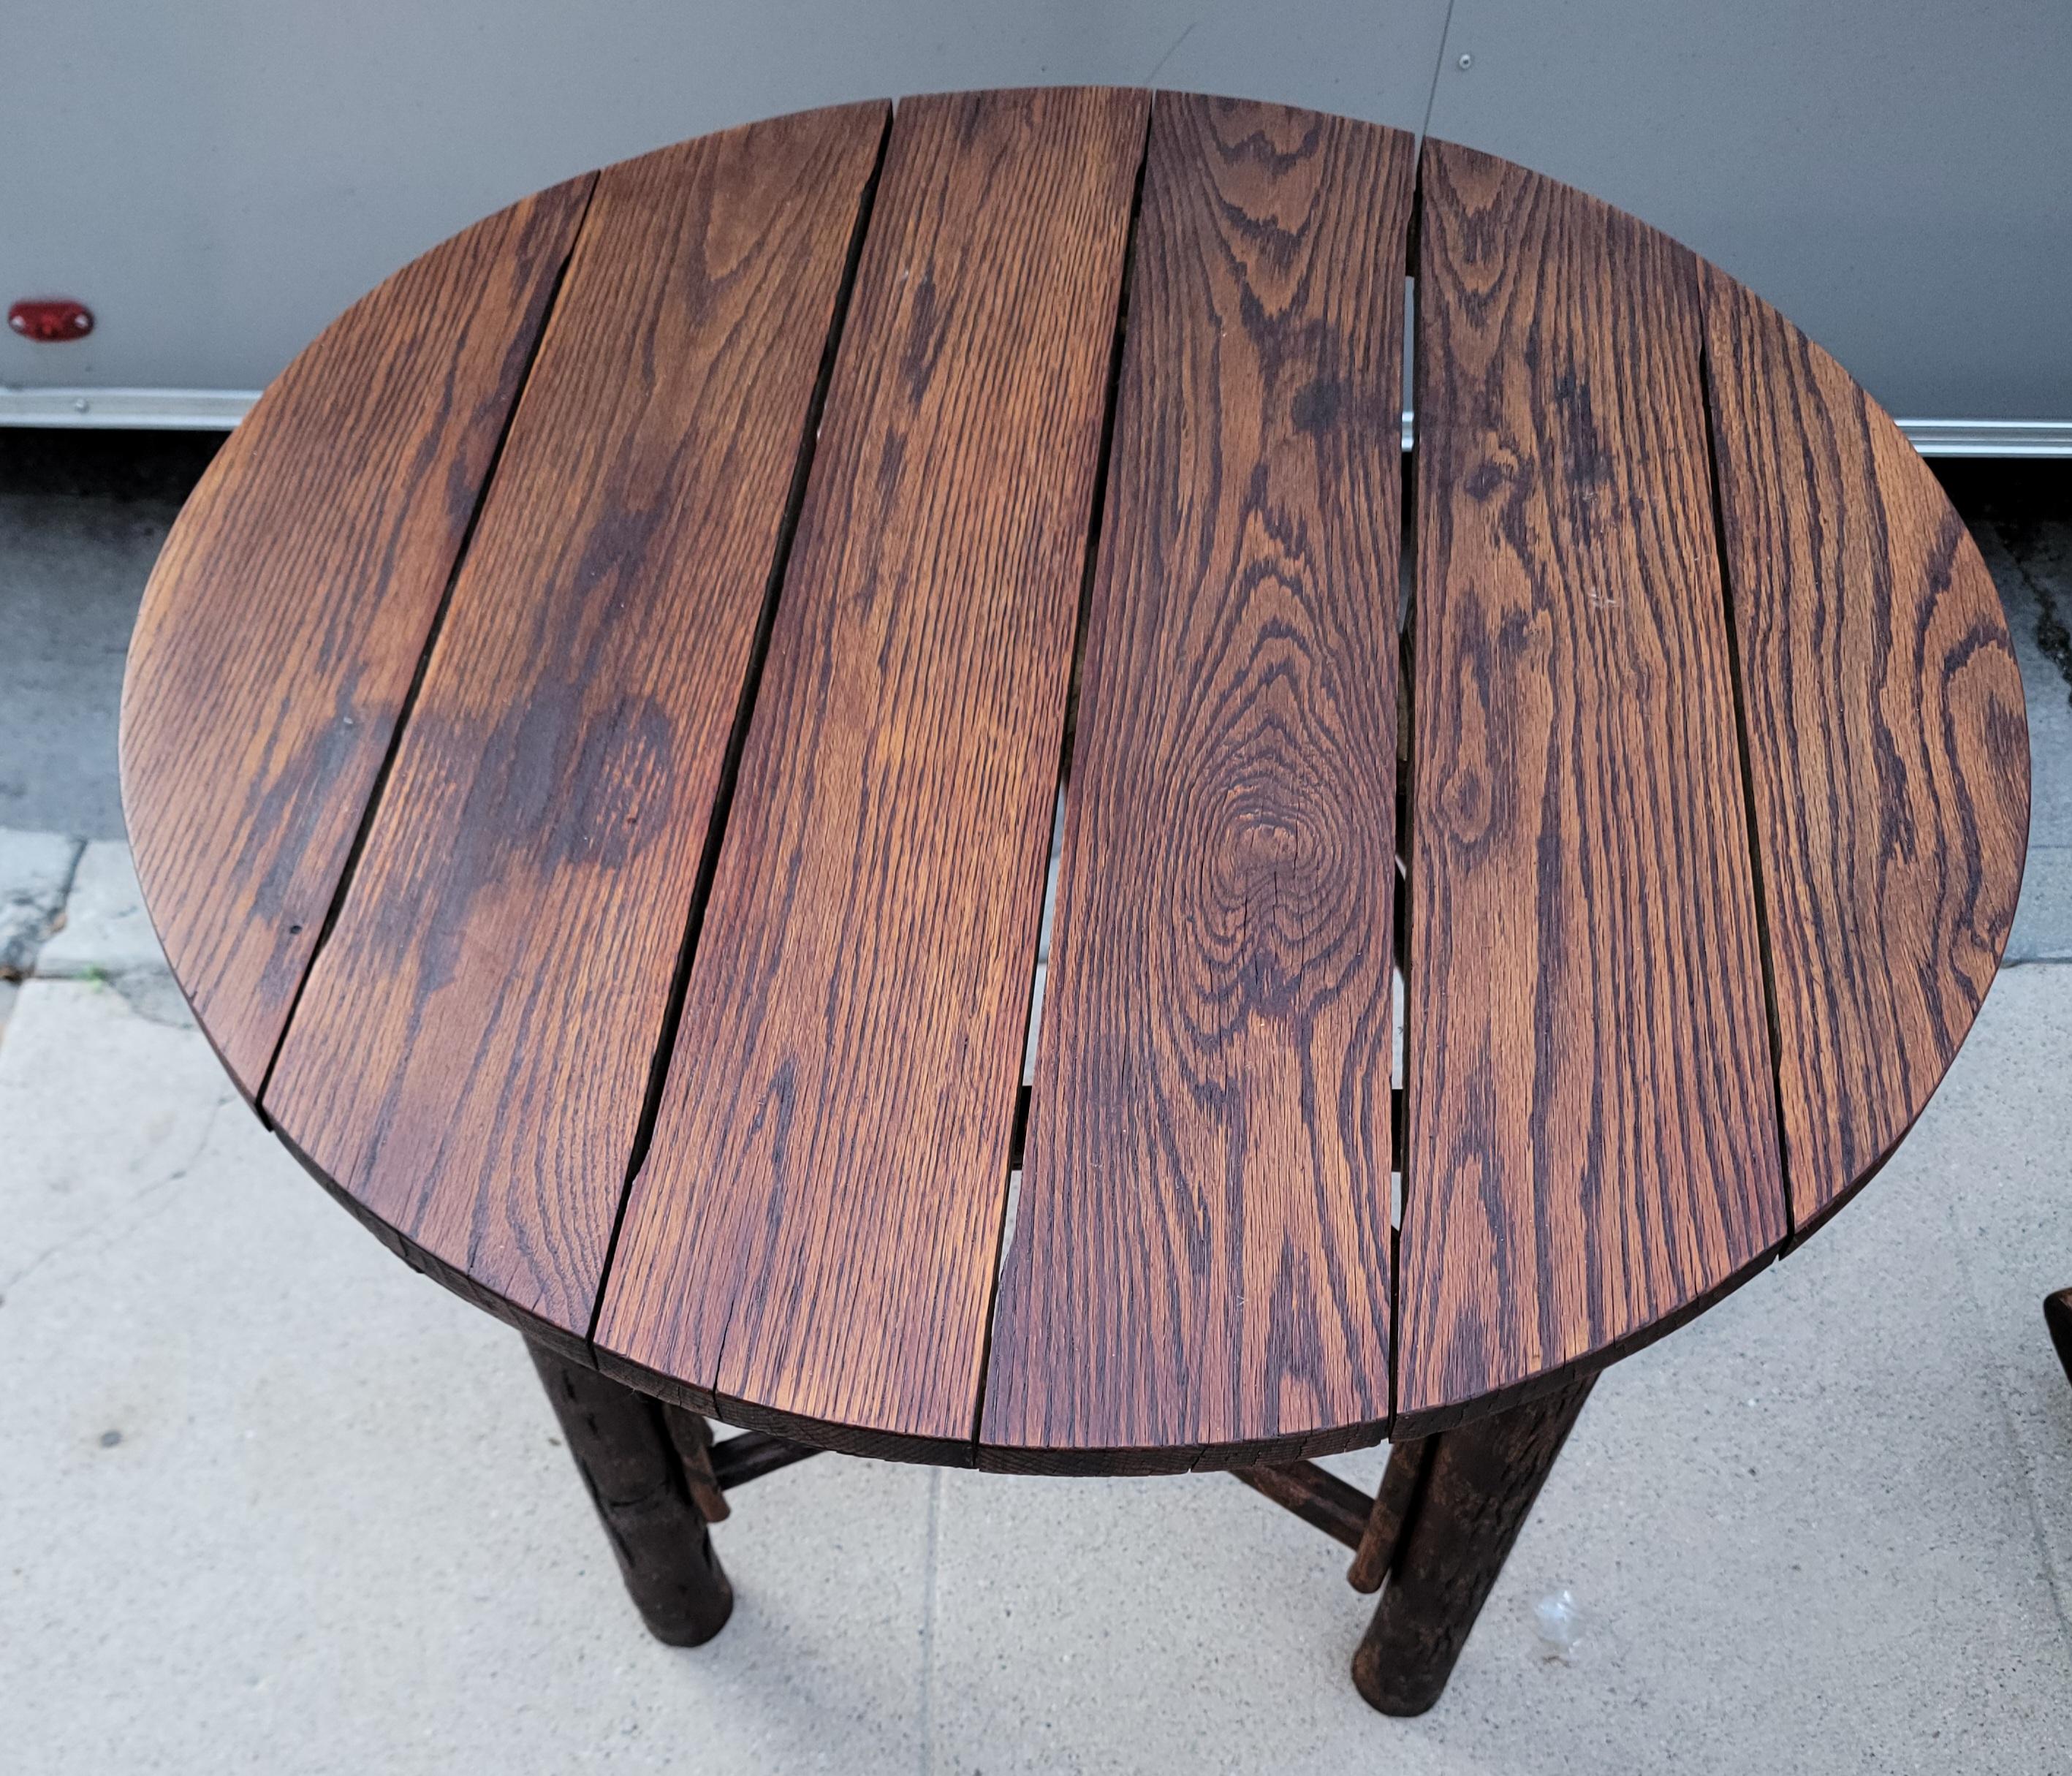 1930er Jahre alten Hickory Latte Holz runde Platte mit gebogenem Holz Hickory Pieces für strukturelle Stabilität. Hat großes Gewicht und bietet eine Adirondack / rustikale Tabelle, die dauern wird. 